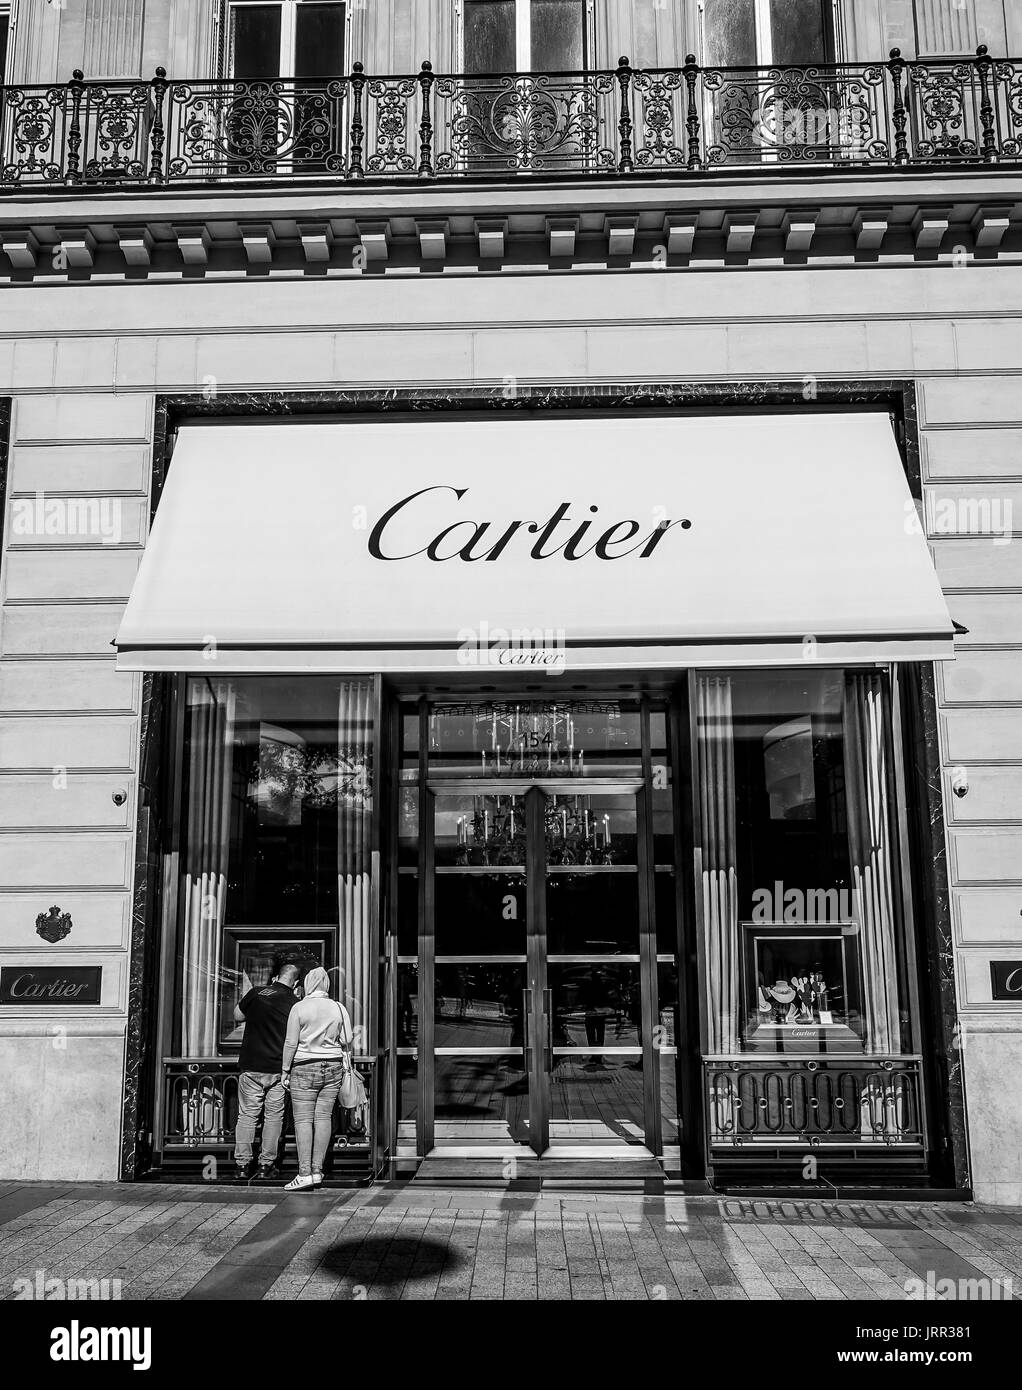 cartier shop toronto